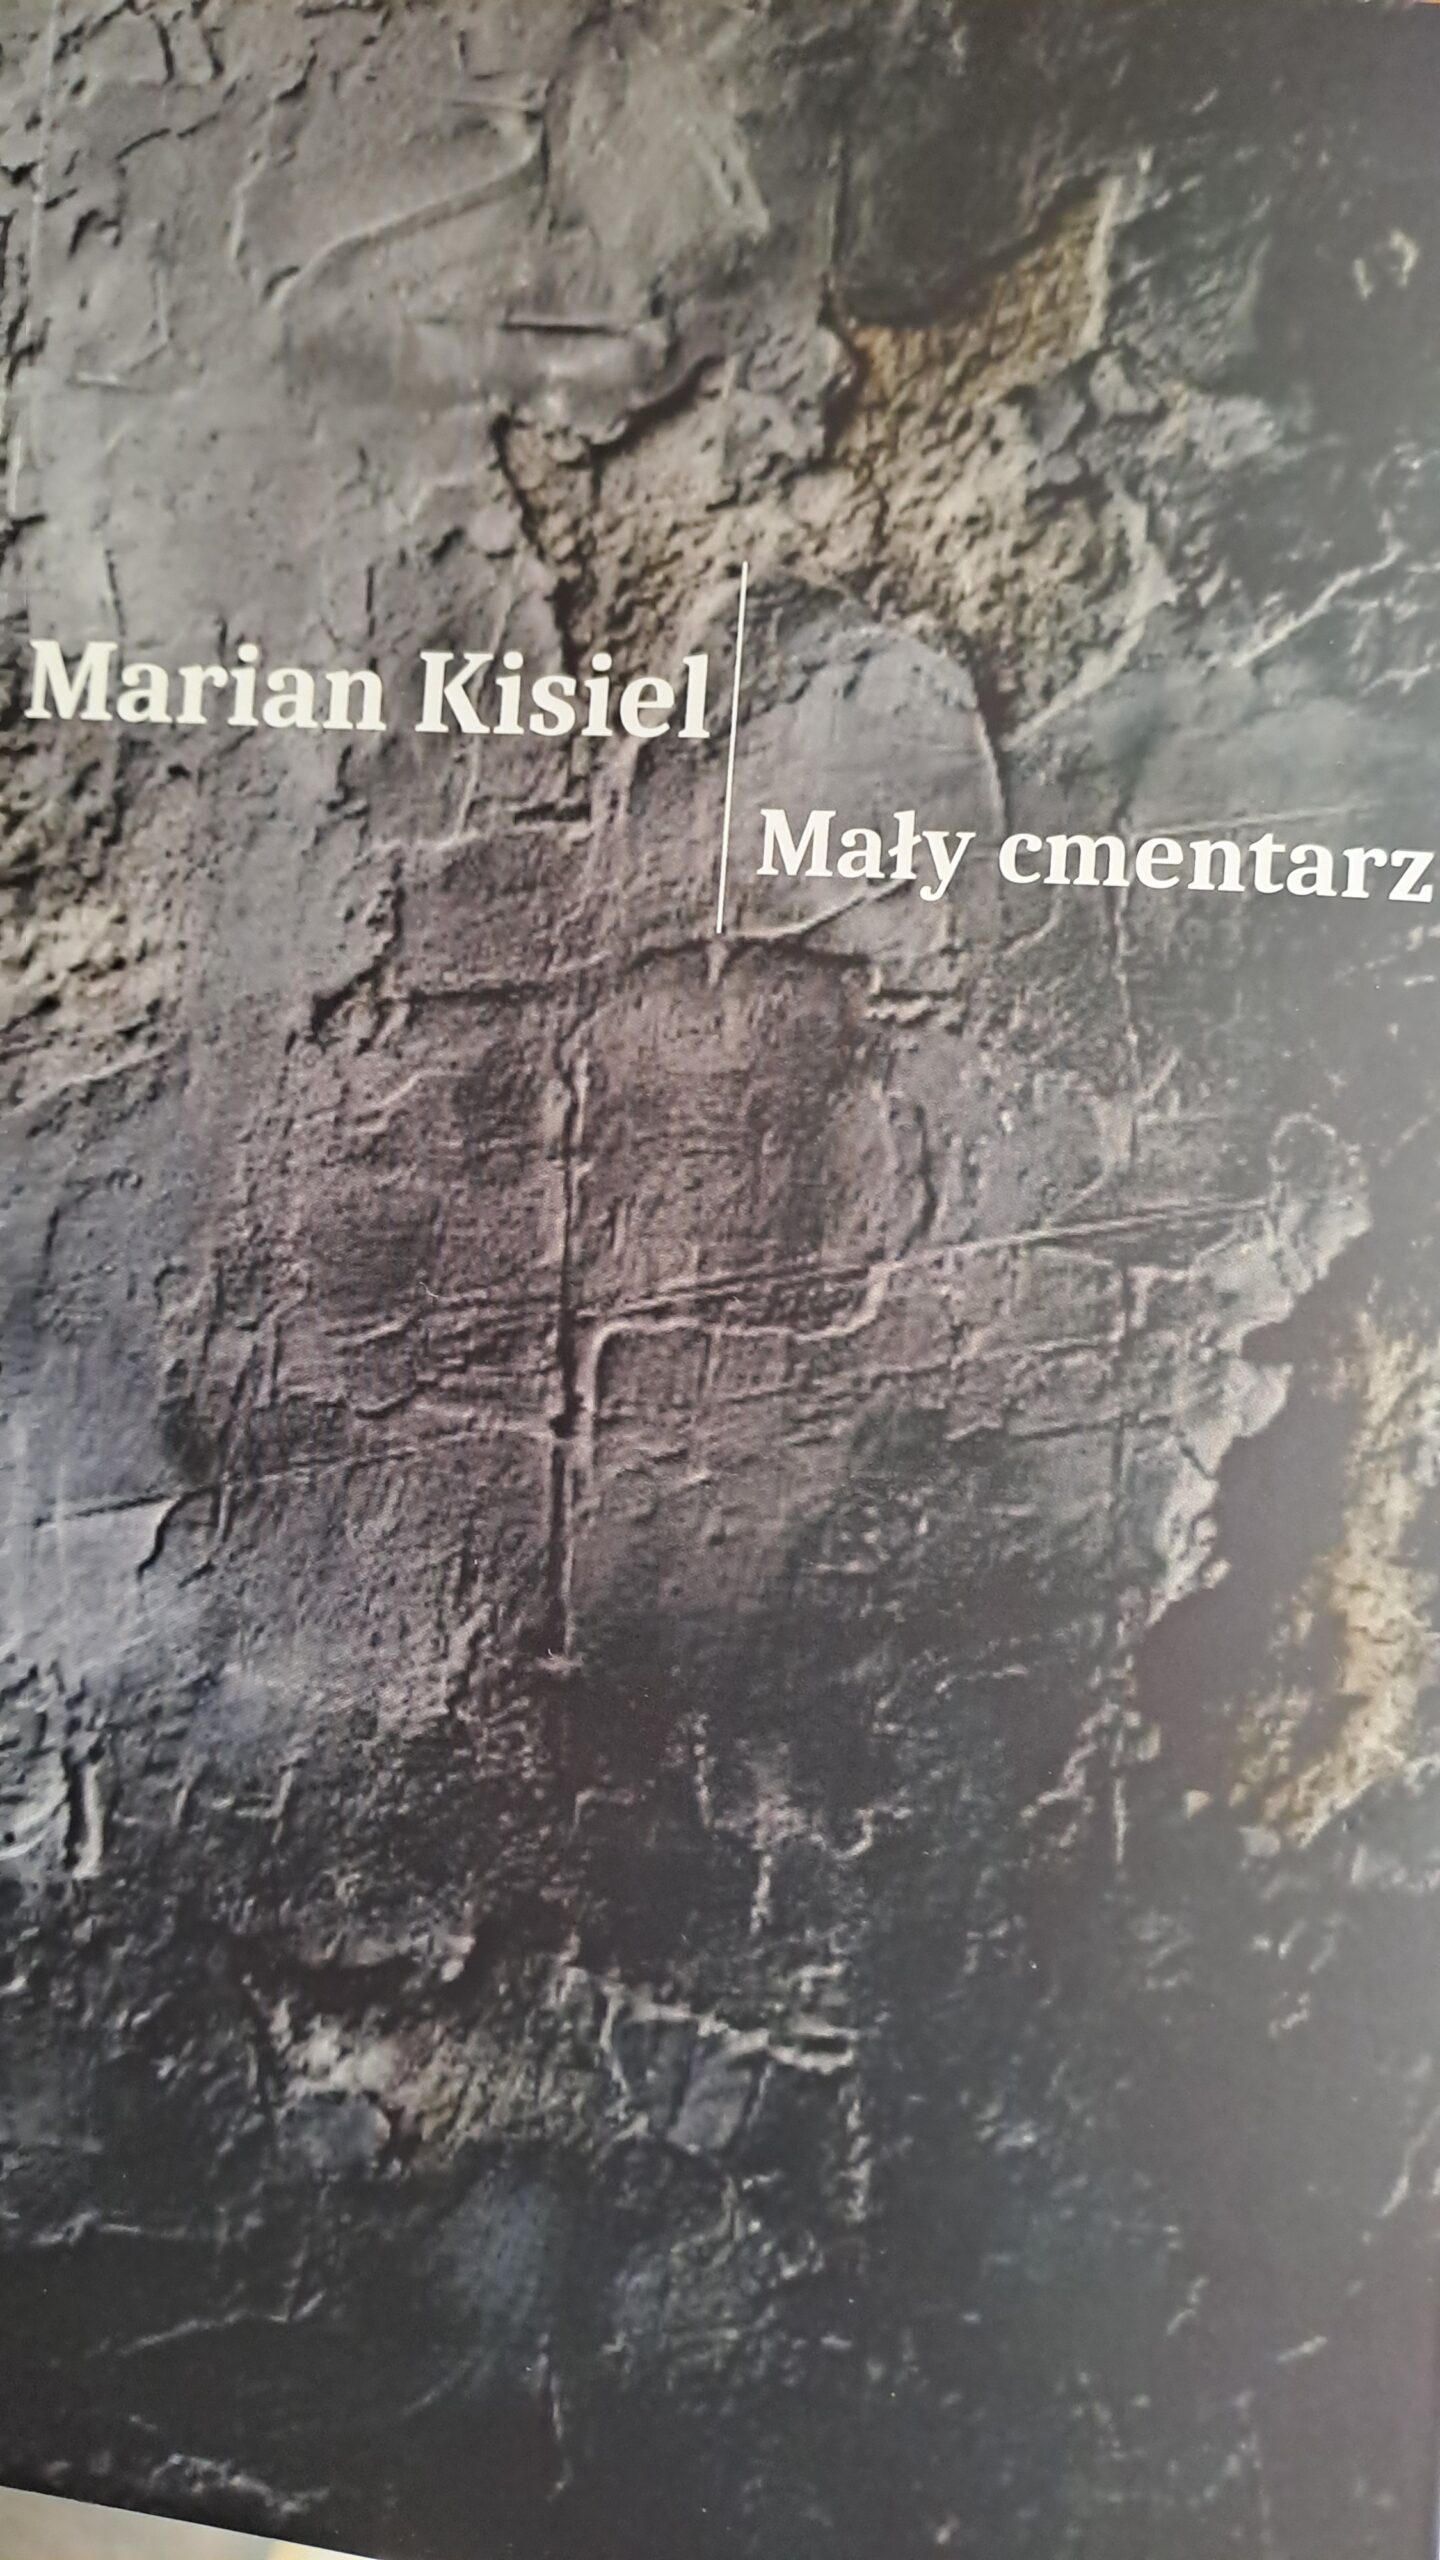 okładka książki Mały cmentarz Marian Kisiel